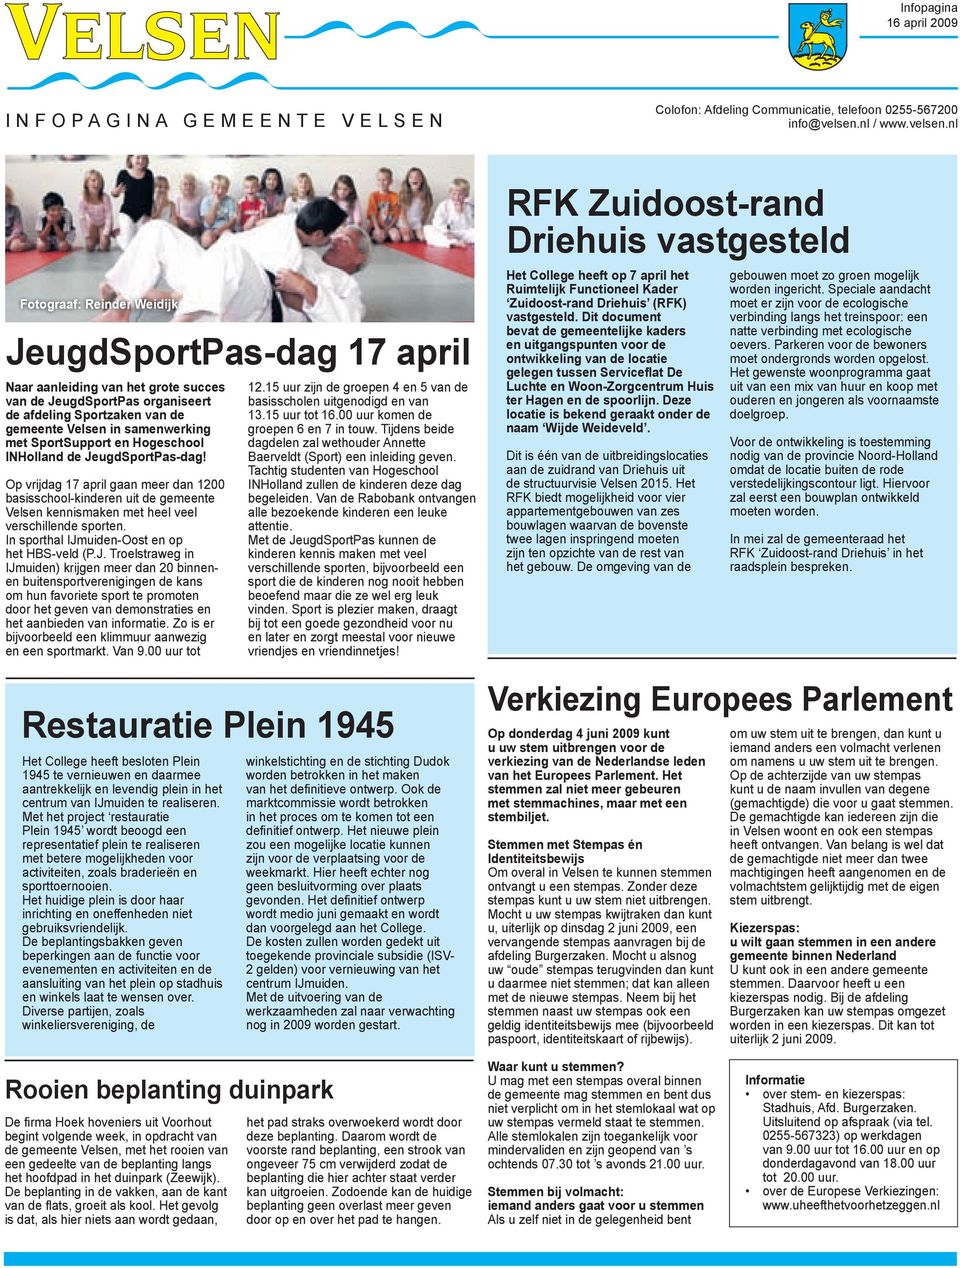 nl Fotograaf: Reinder Weidijk JeugdSportPas-dag 17 april Naar aanleiding van het grote succes van de JeugdSportPas organiseert de afdeling Sportzaken van de gemeente Velsen in samenwerking met